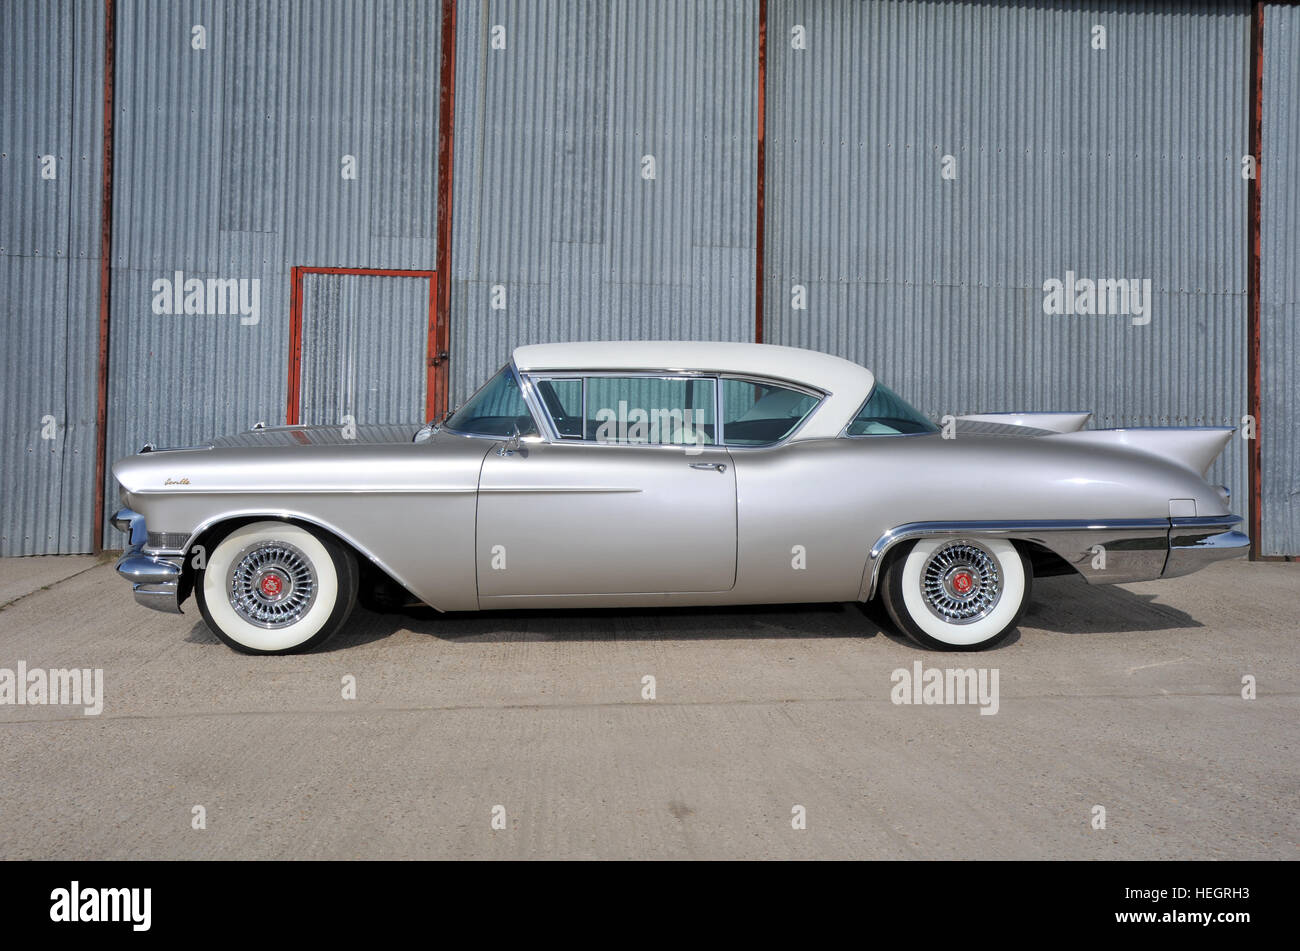 1957 Cadillac Eldorado Seville Voiture de luxe américaine Photo Stock -  Alamy